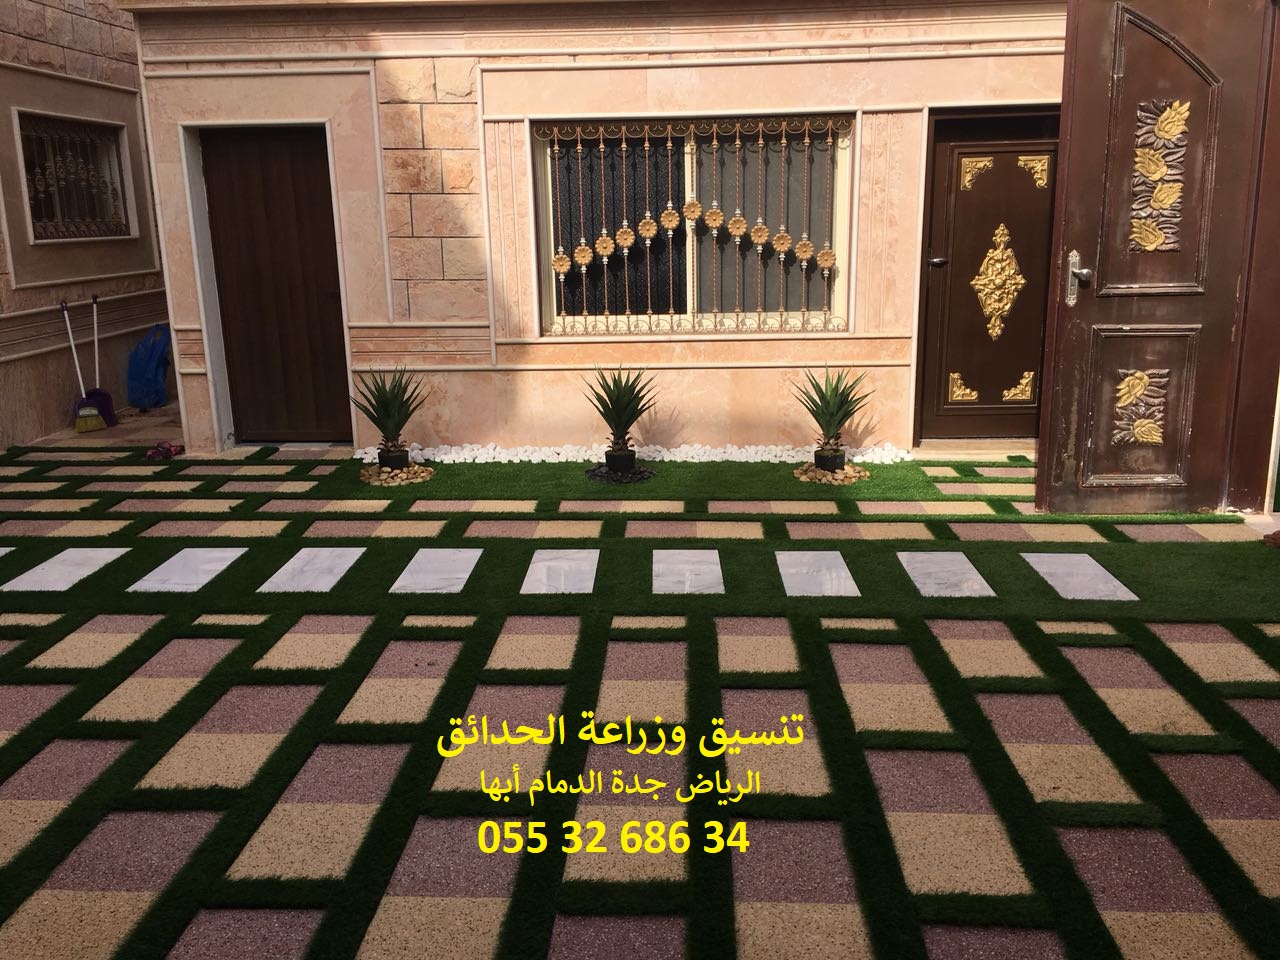 شركة تنسيق حدائق الرياض جدة الدمام ابها 0553268634 P_878scjkg3